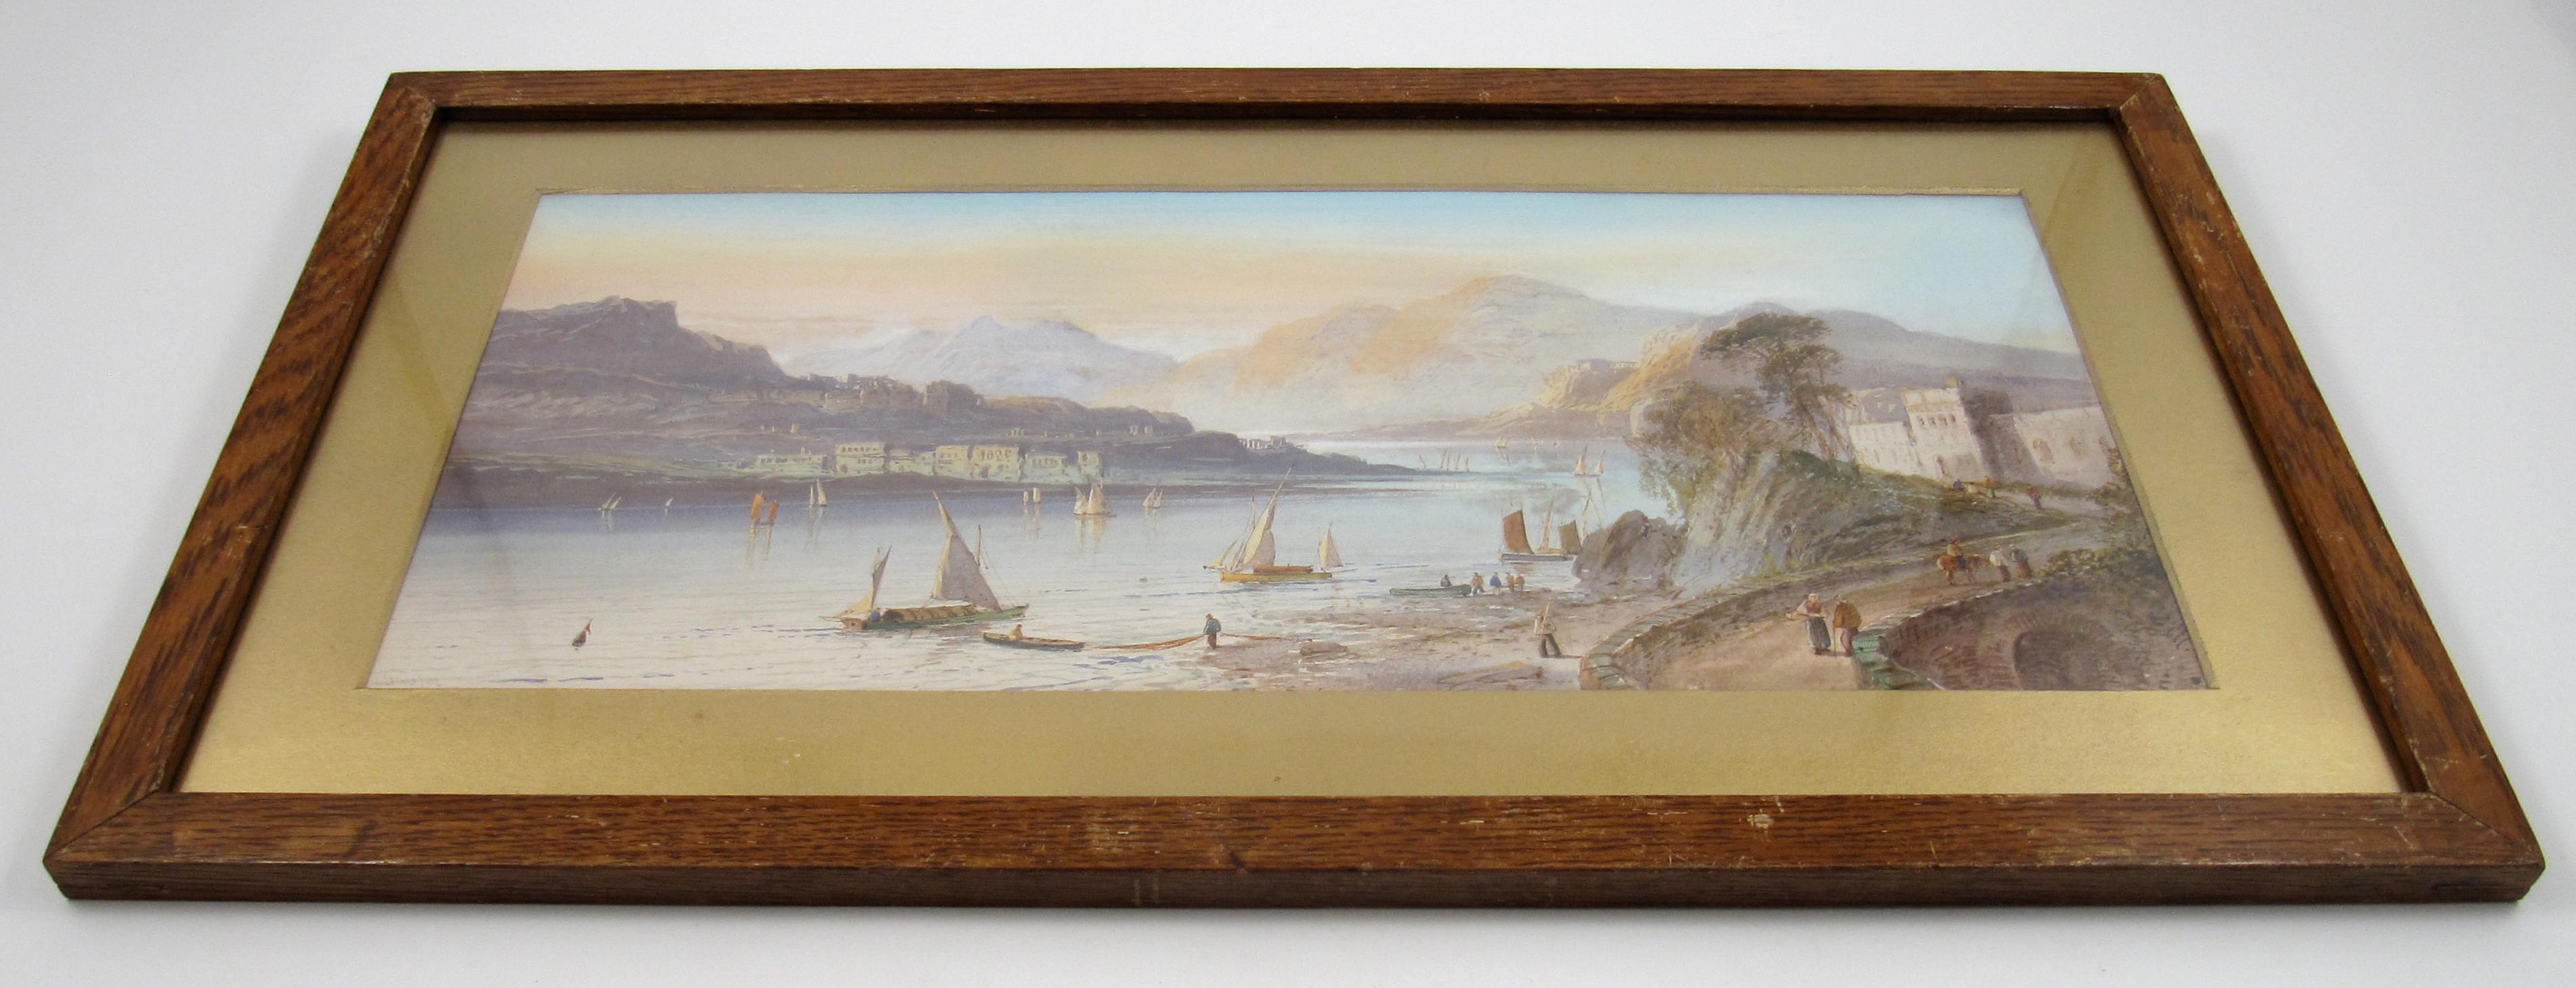 Lewis (anglais, 1826 - 1913) Lago Maggiore Suisse Aquarelle 1898 - Victorien Art par Lennard Lewis